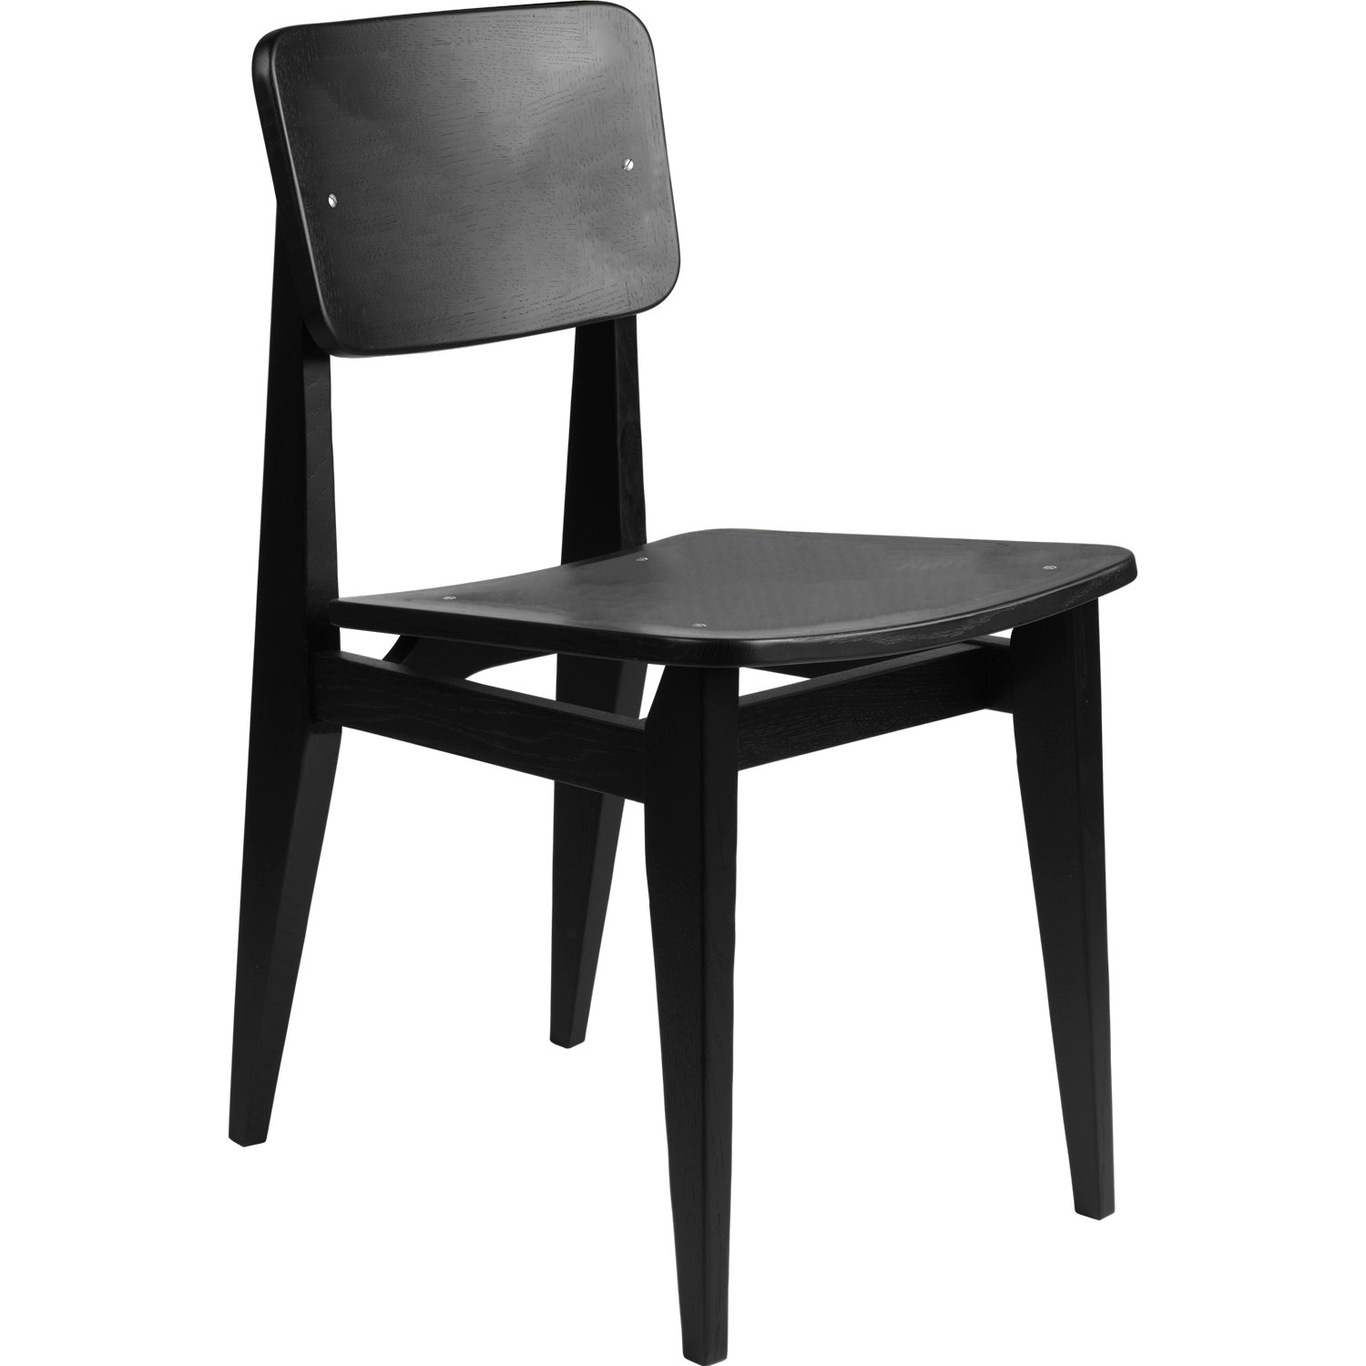 C-Chair Stuhl, Furnier / Eiche Schwarz Geölt